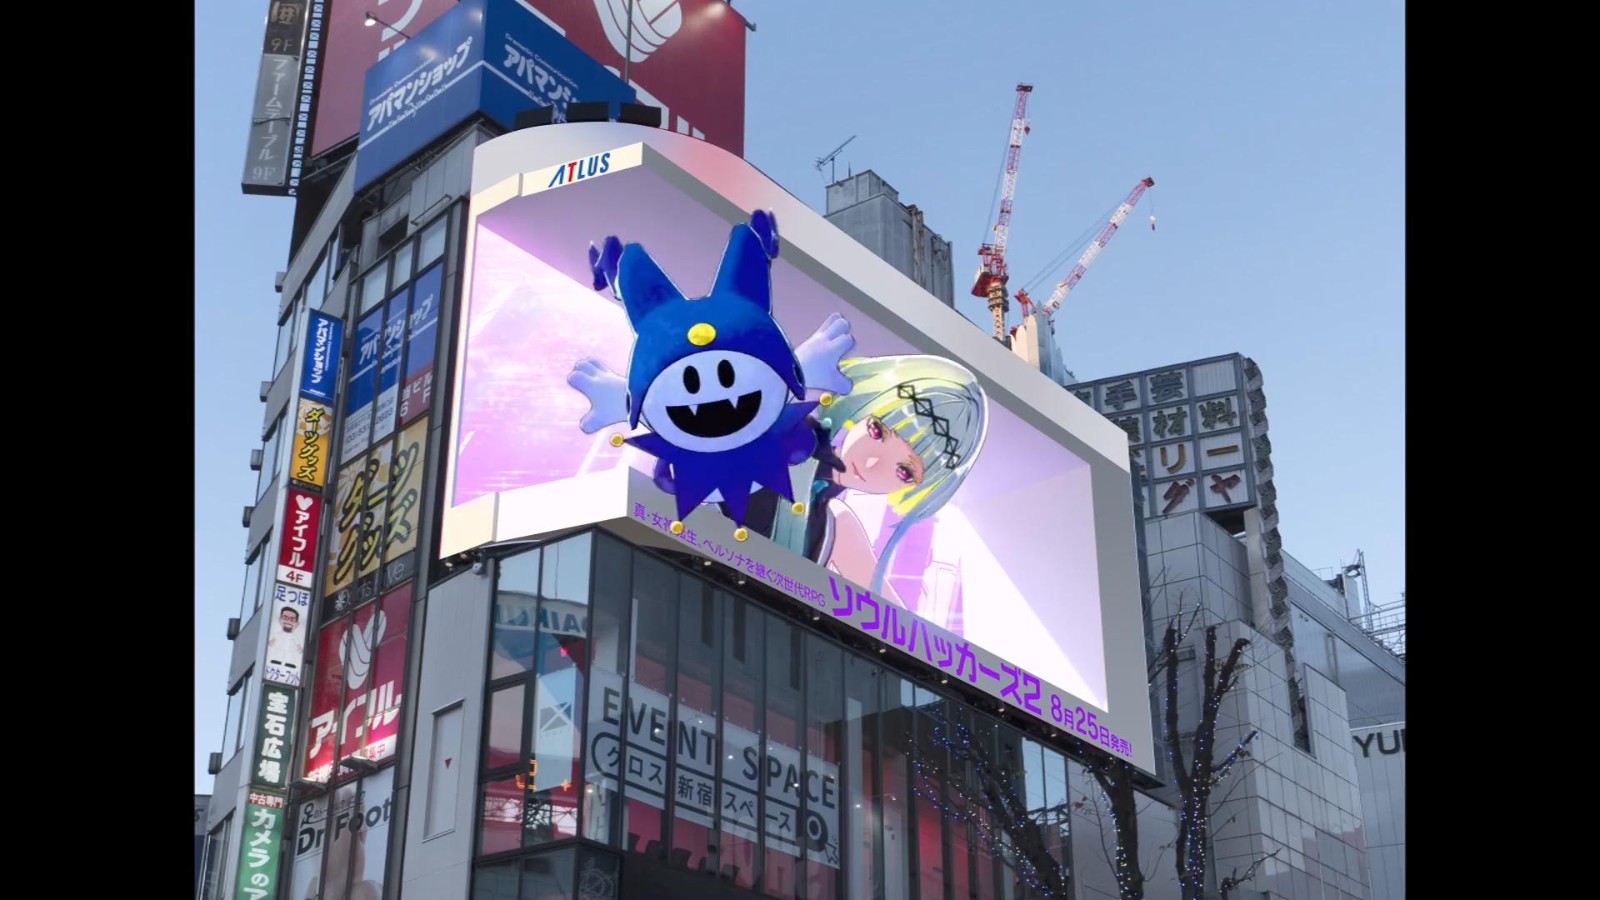 杰克霜精现身日本街头 《灵魂骇客2》投放3D广告